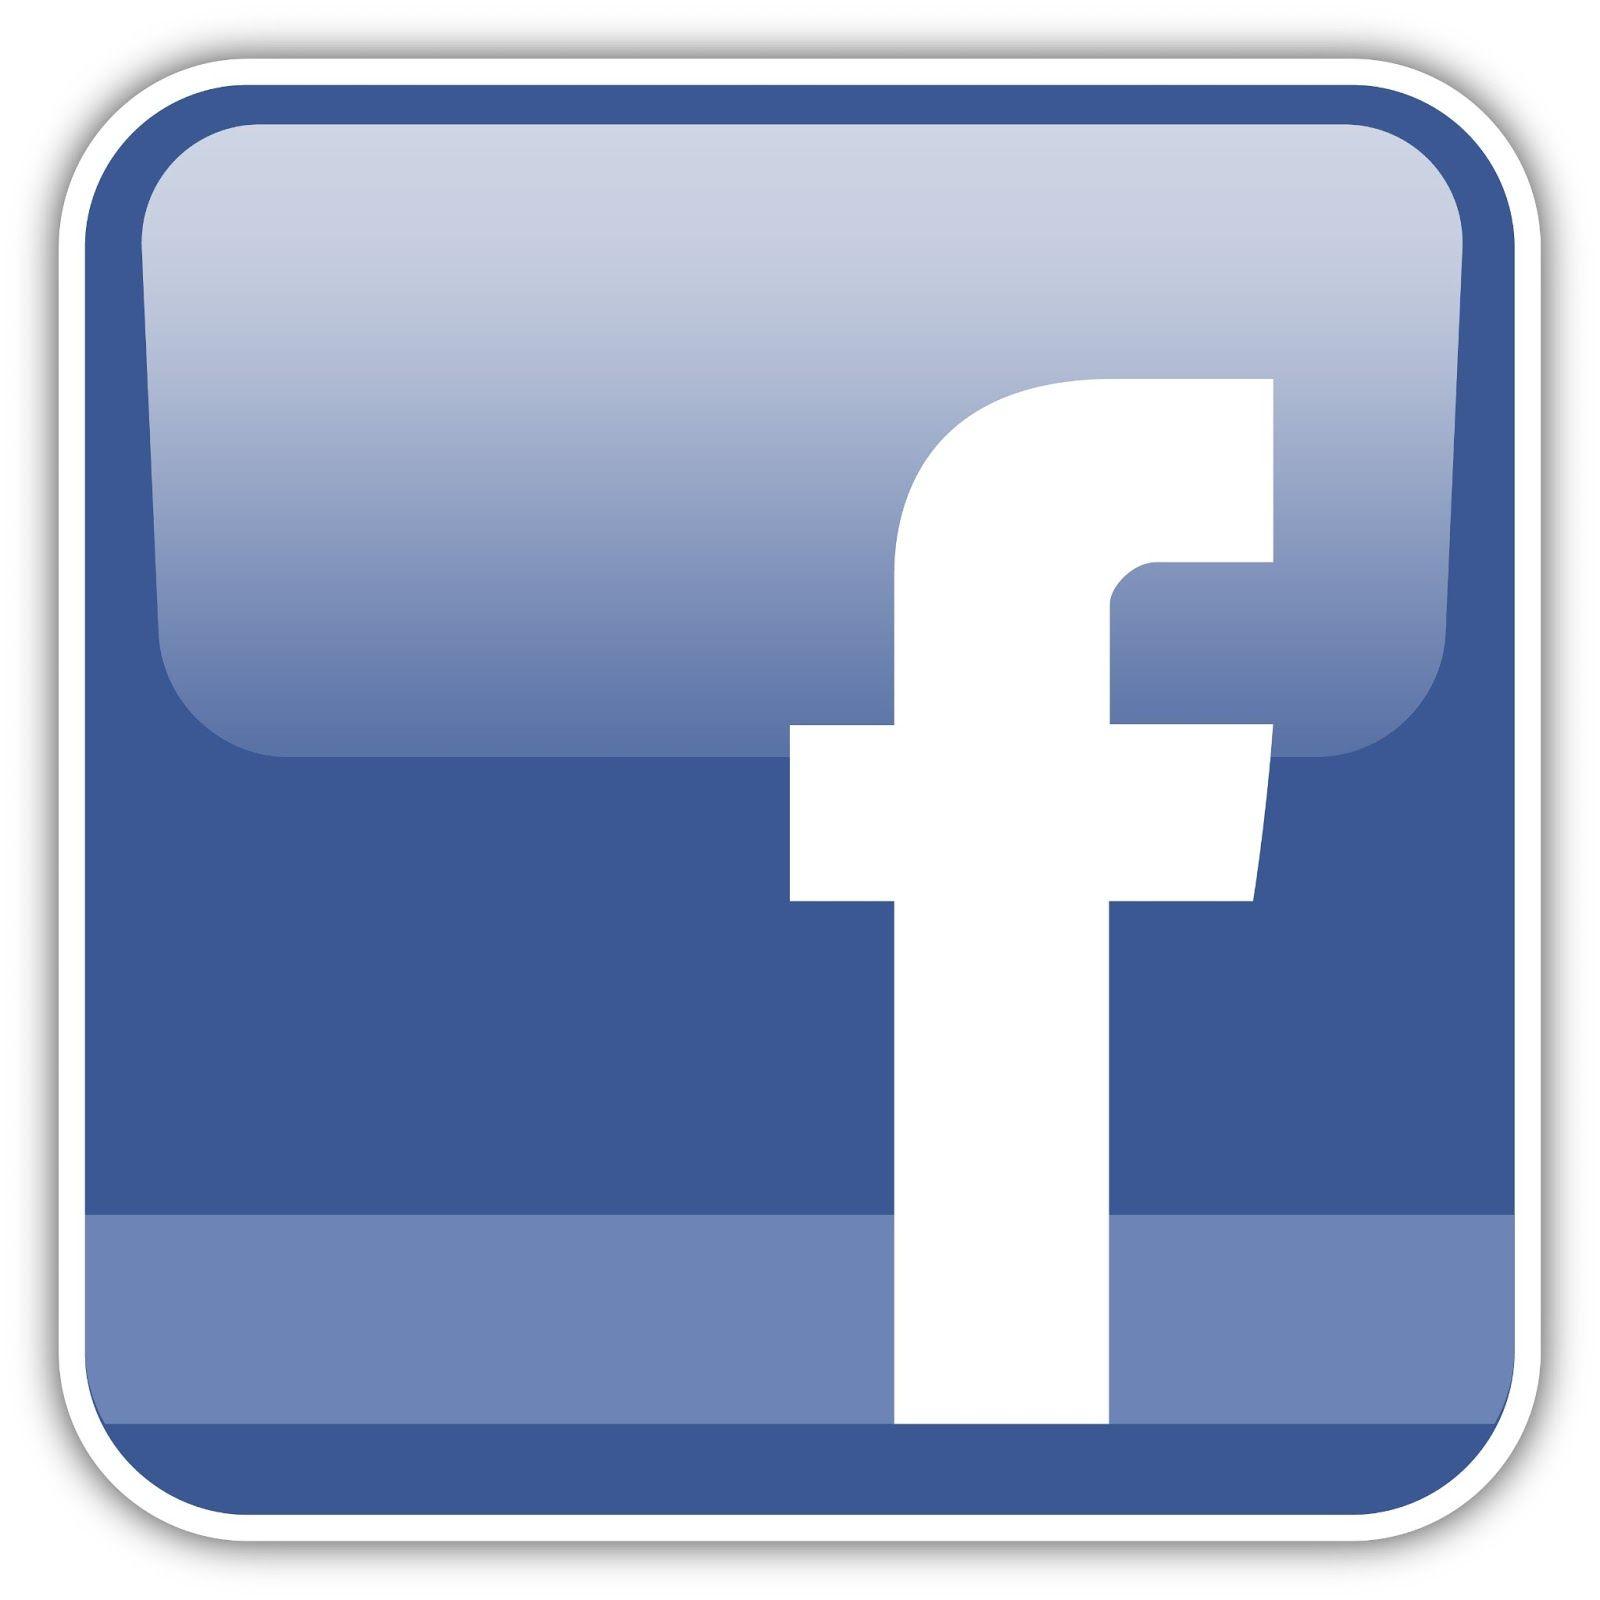 Facebook Logo - Facebook Logo Real Estate Group Spokane